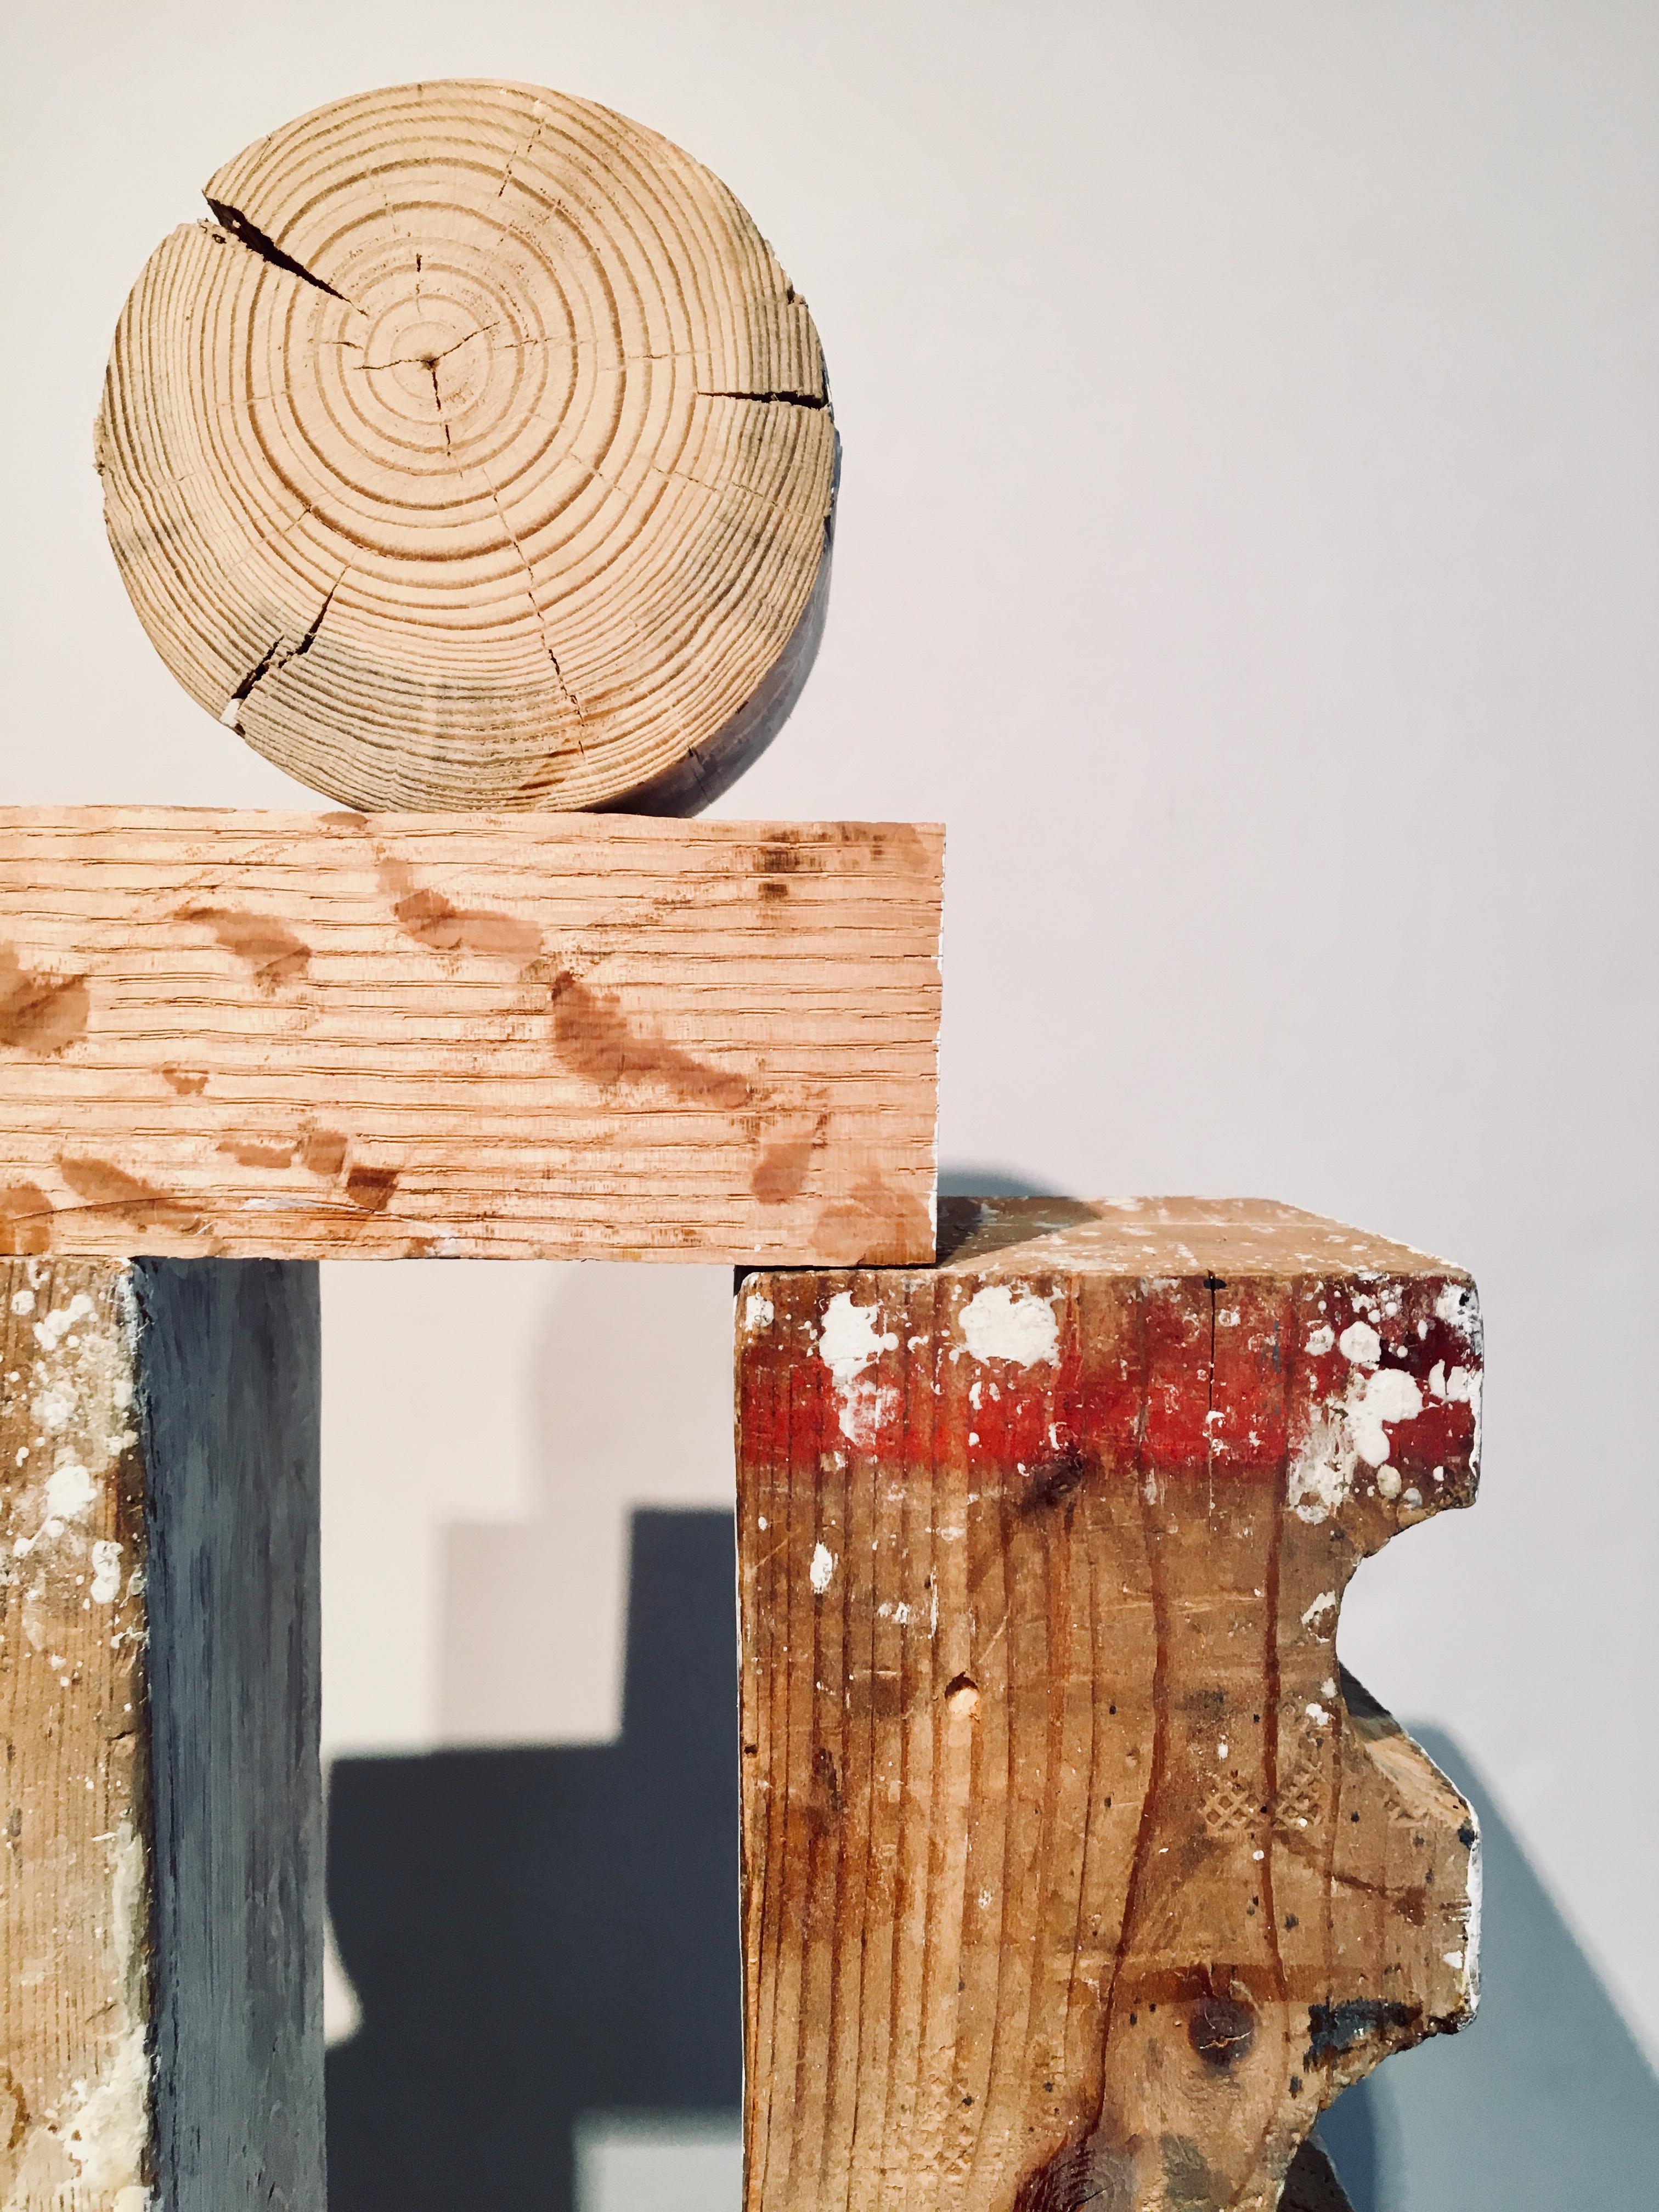 Abstract wood Sculpture: 'Rig III' 2